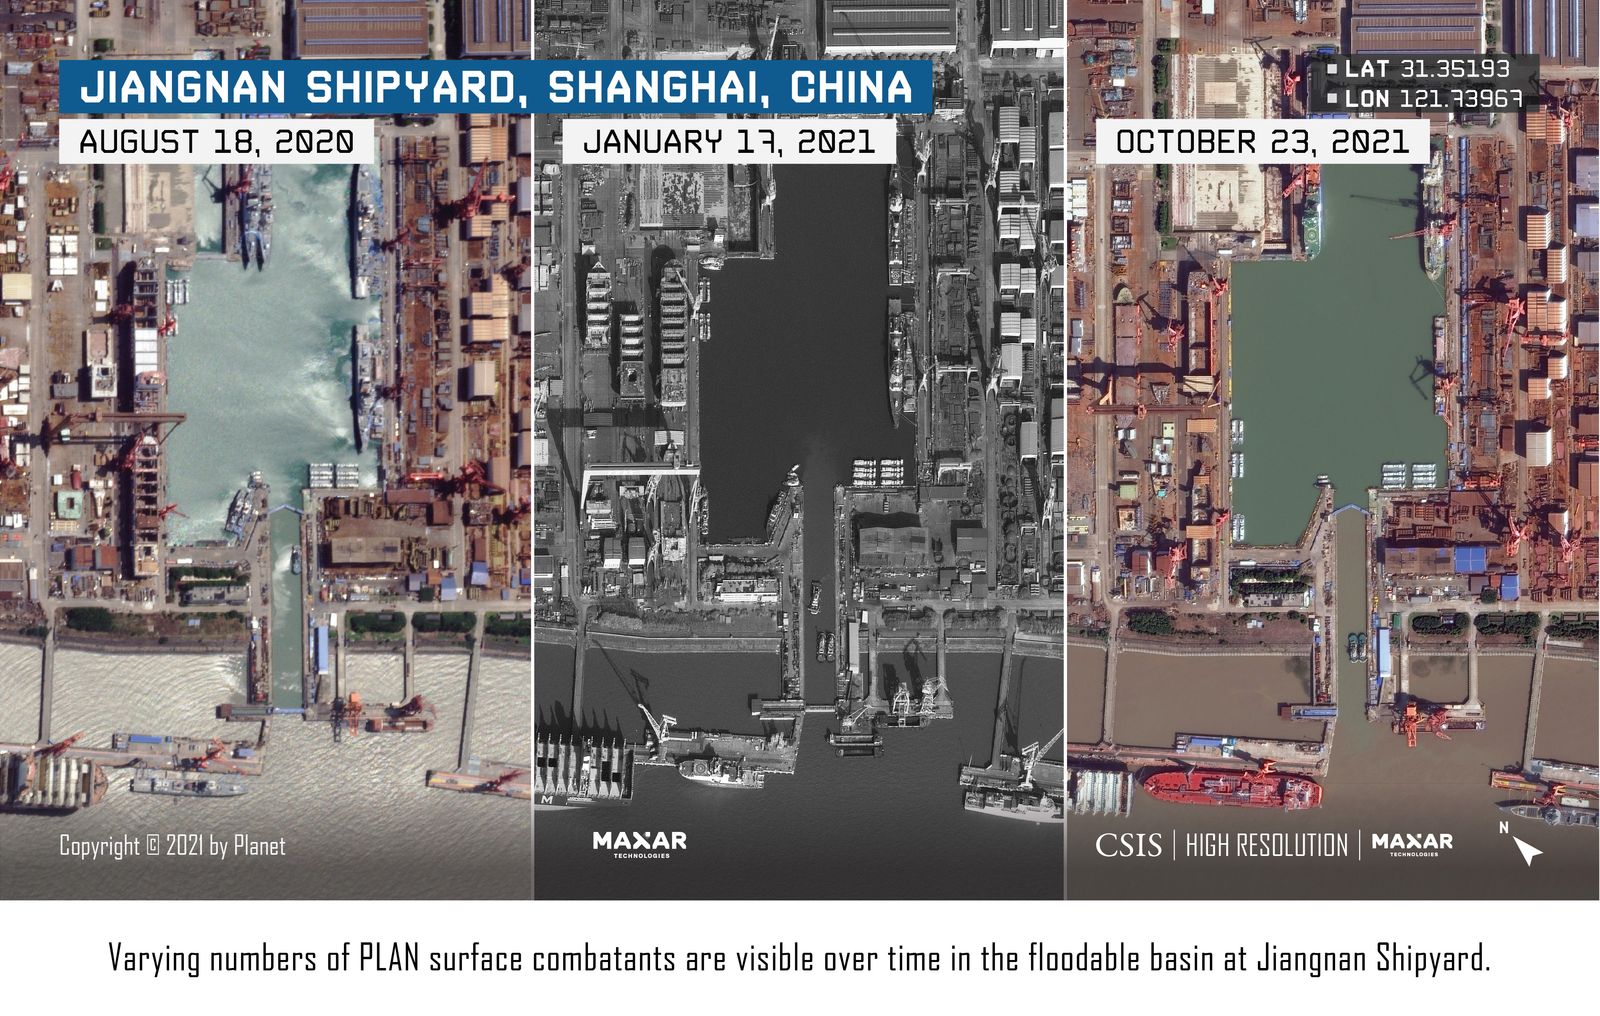 مراحل تشييد حاملة الطائرات الصينية الثالثة في حوض جيانجنان قرب شنغهاي  - csis.org